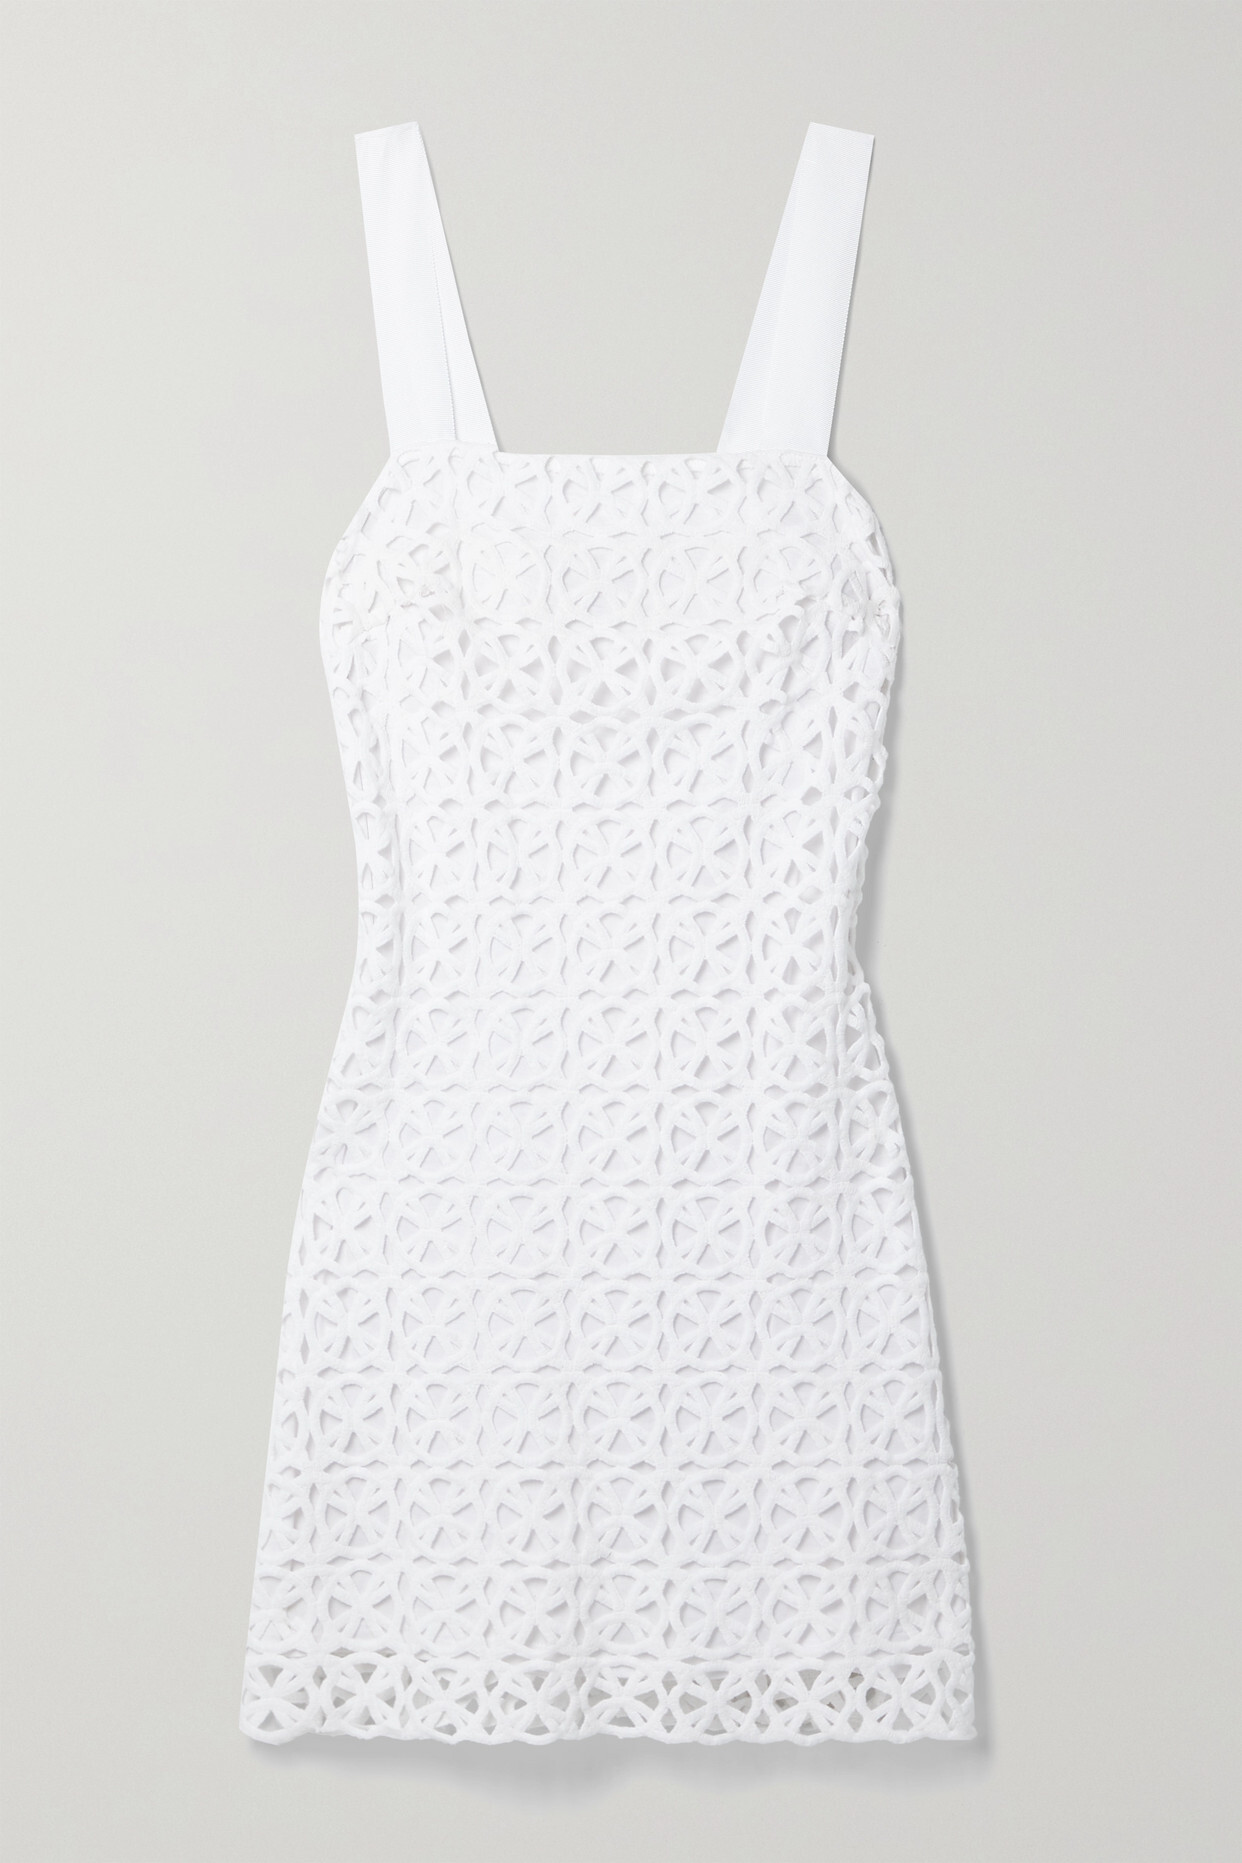 Miguelina - Kira Crocheted Cotton Mini Dress - White